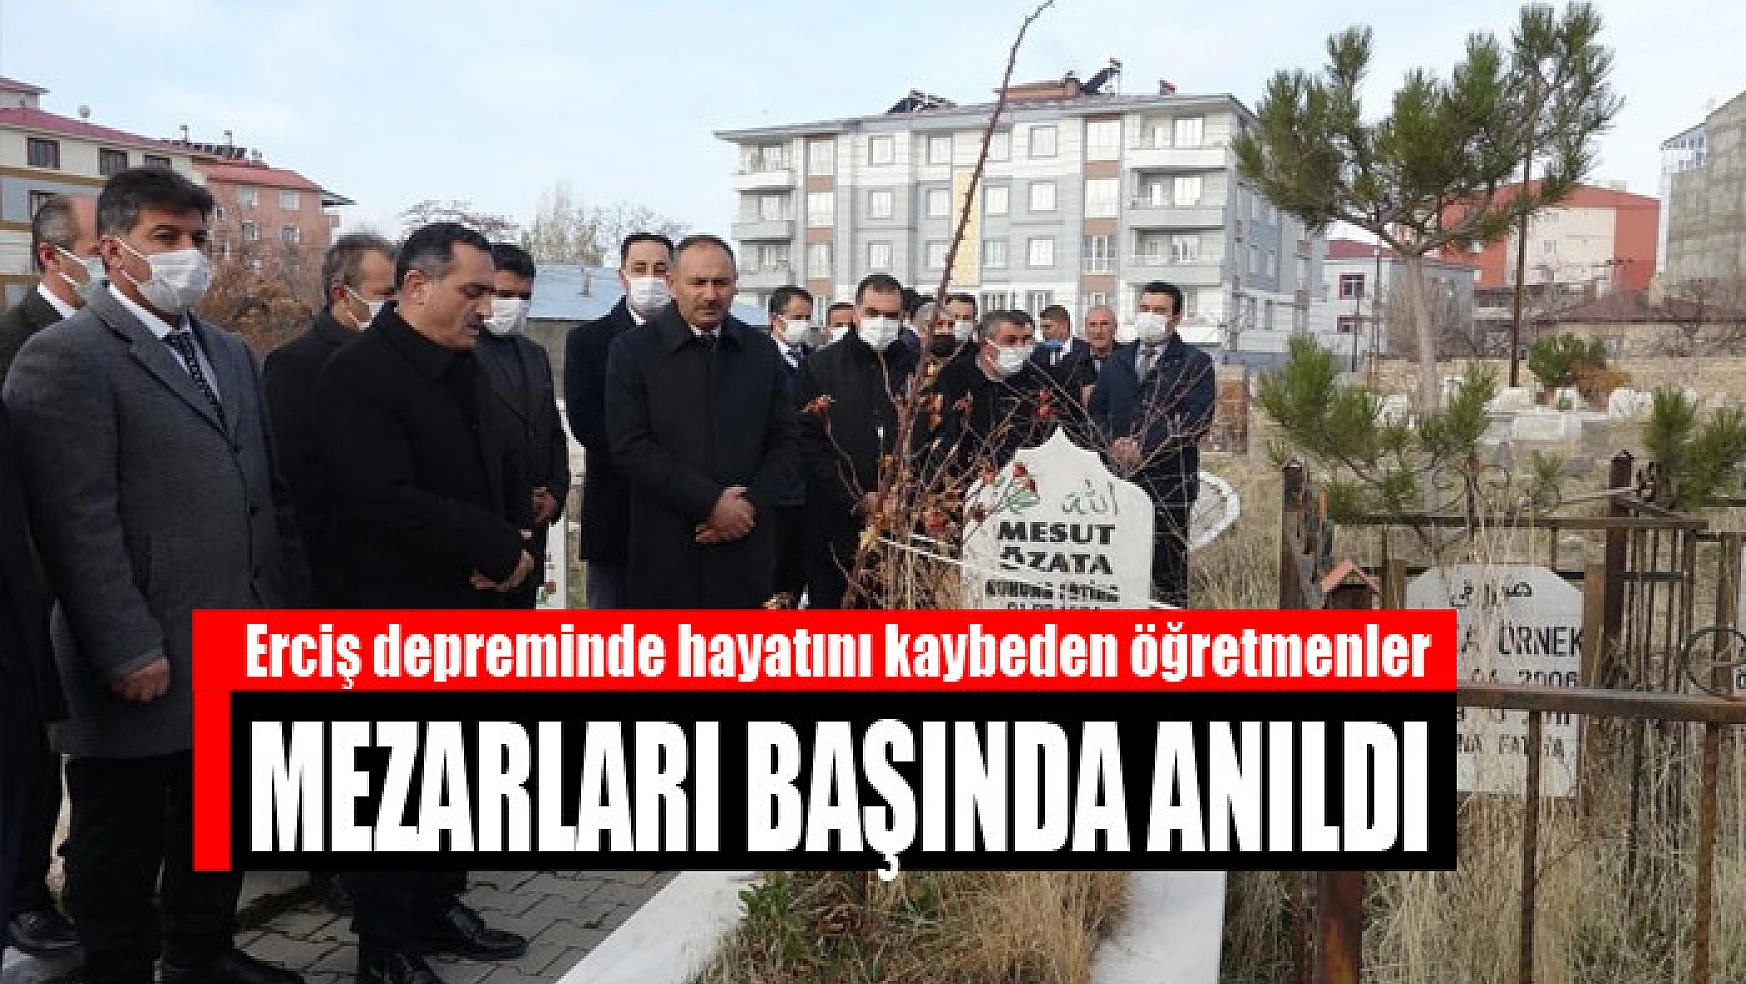 Erciş depreminde hayatını kaybeden öğretmenler mezarları başında anıldı